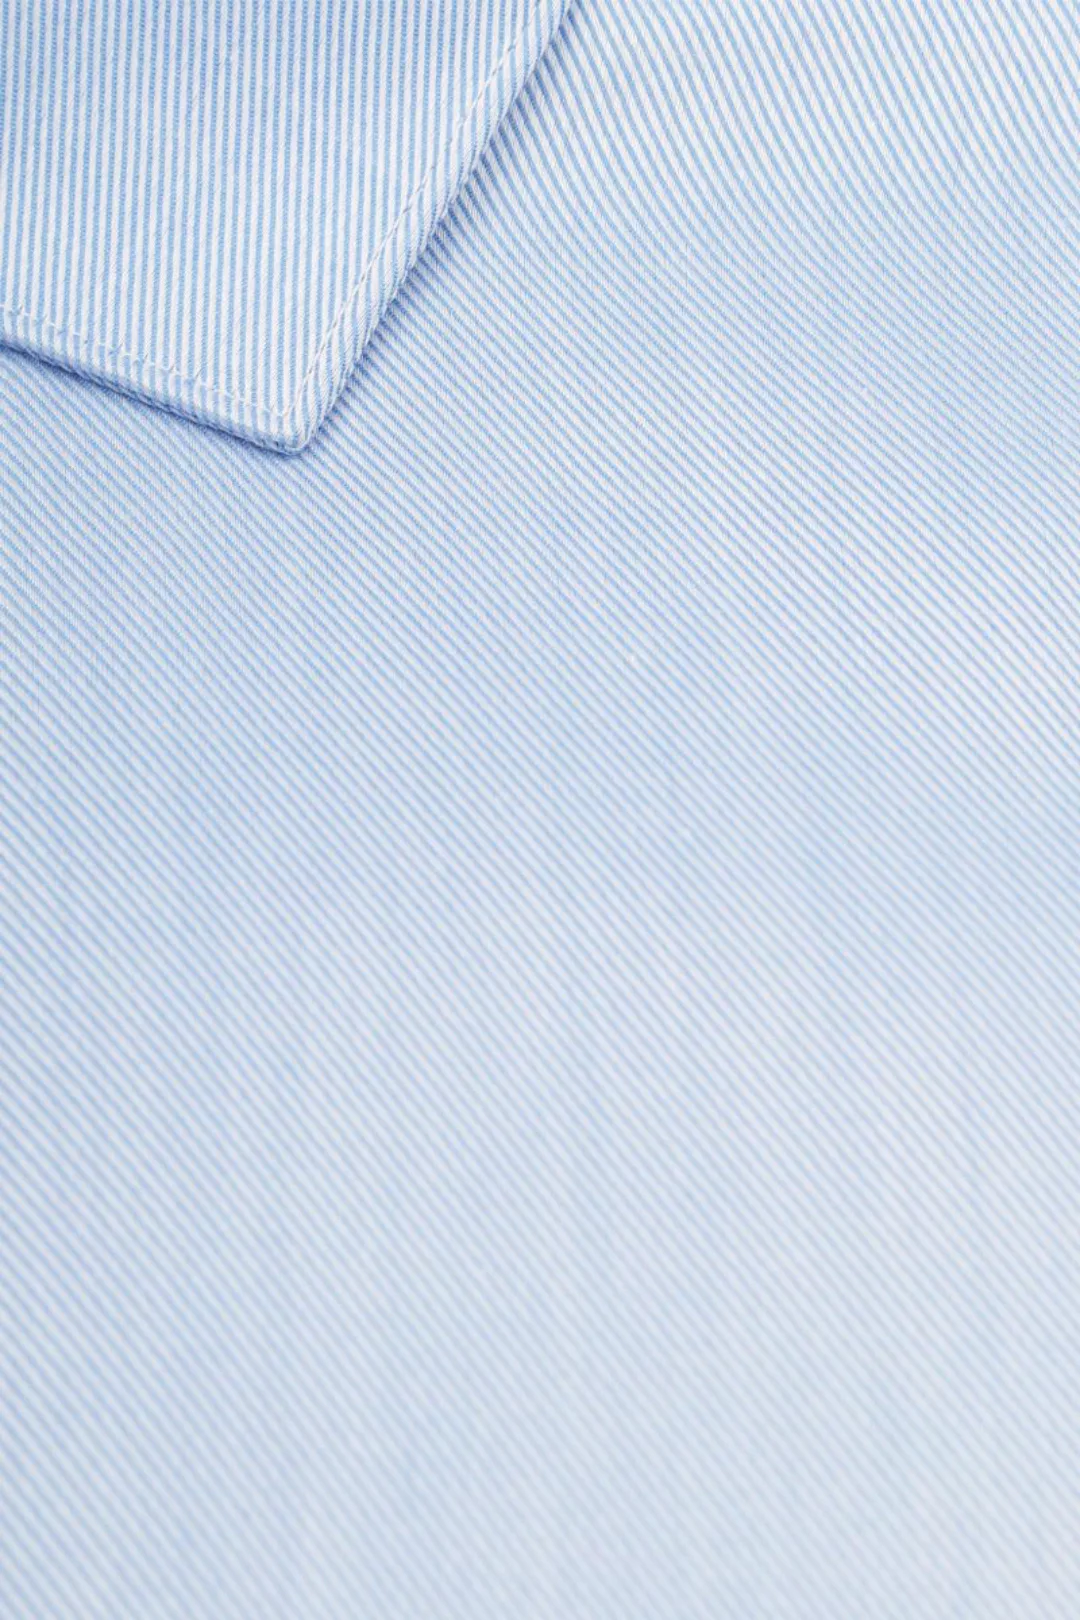 Suitable Hemd Blau DR-04 - Größe 43 günstig online kaufen